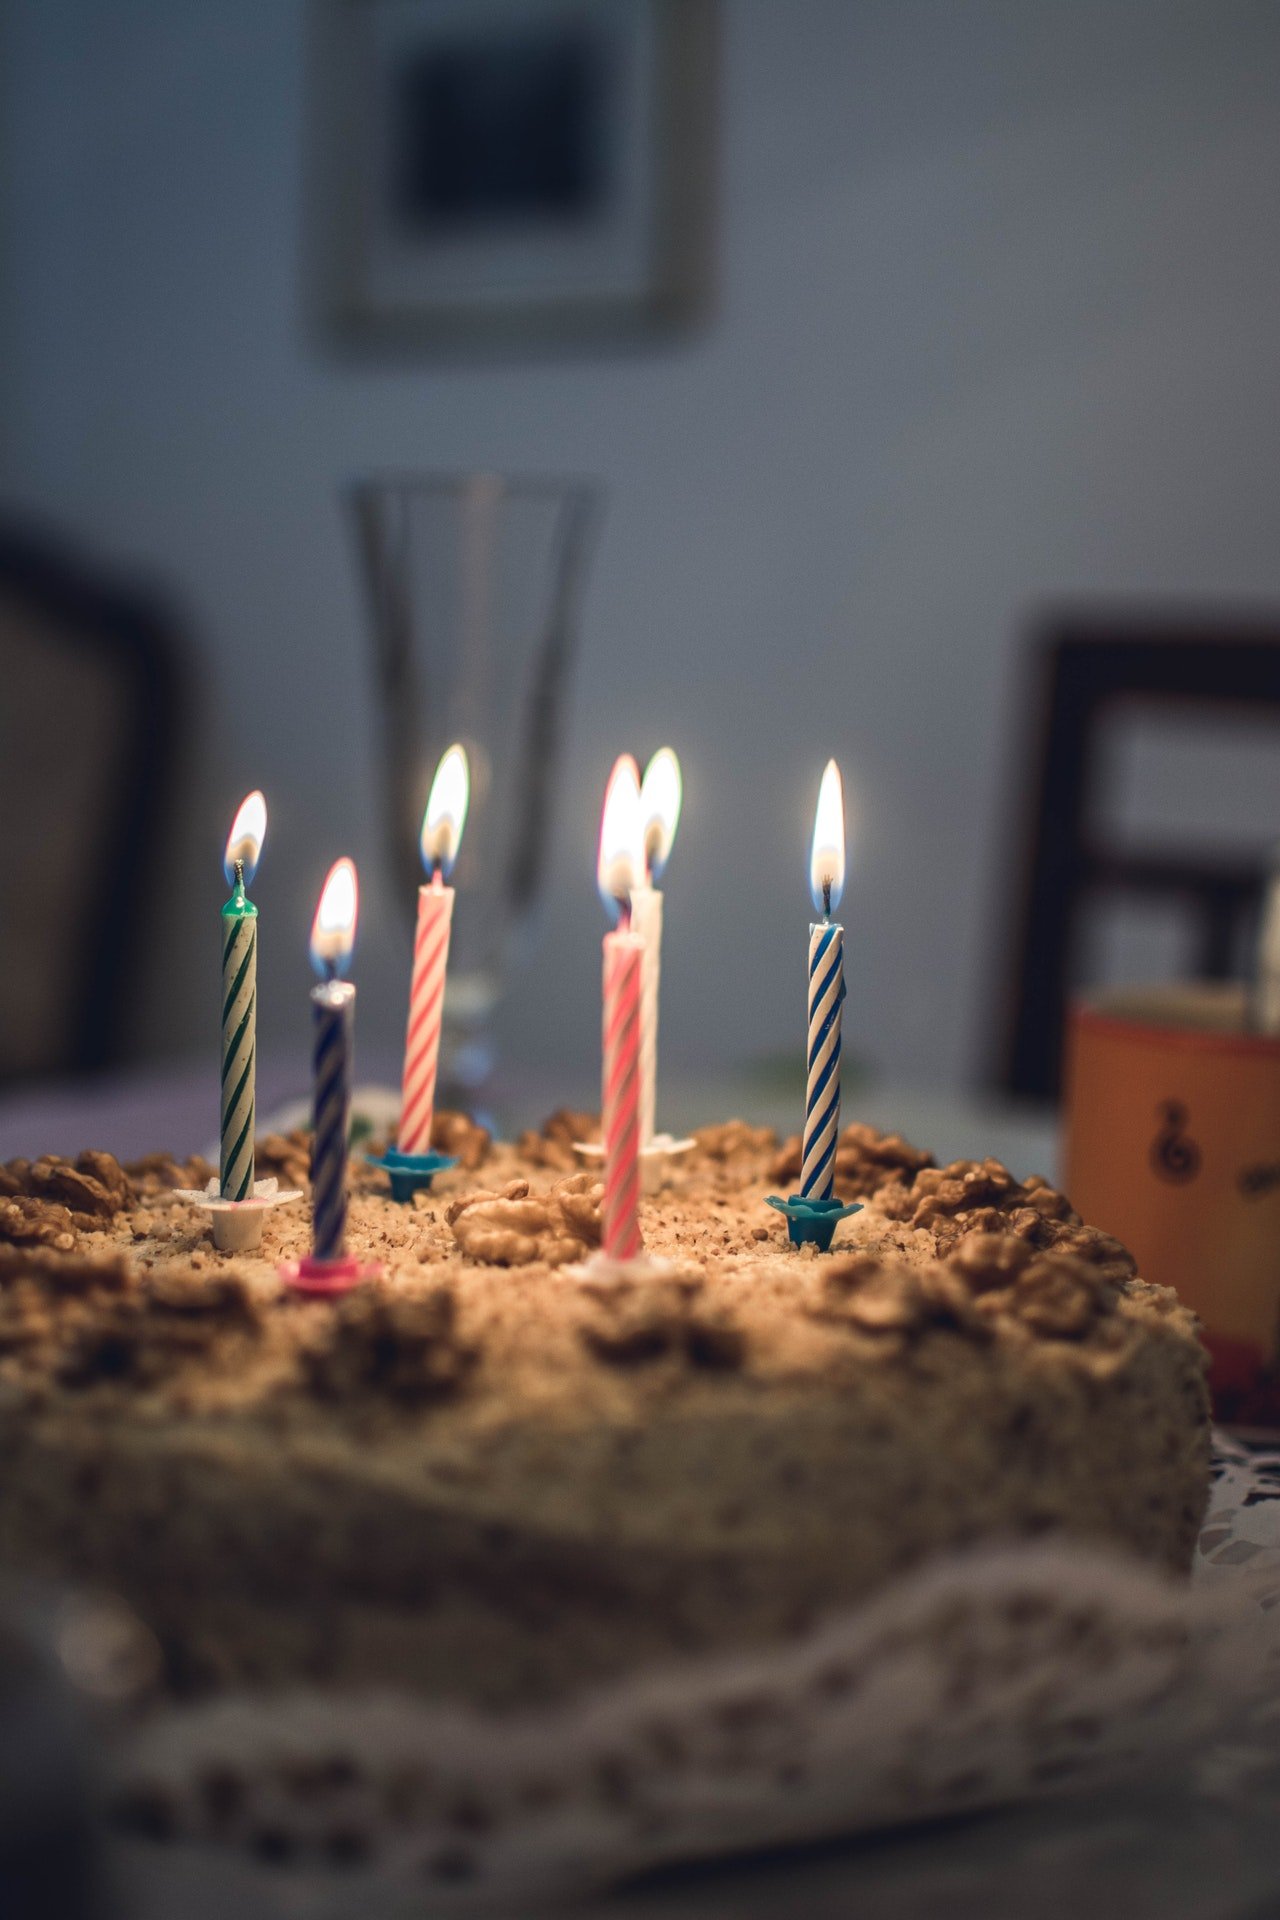 Oliver a soufflé les bougies de son gâteau d'anniversaire avec joie. | Source : Pexels